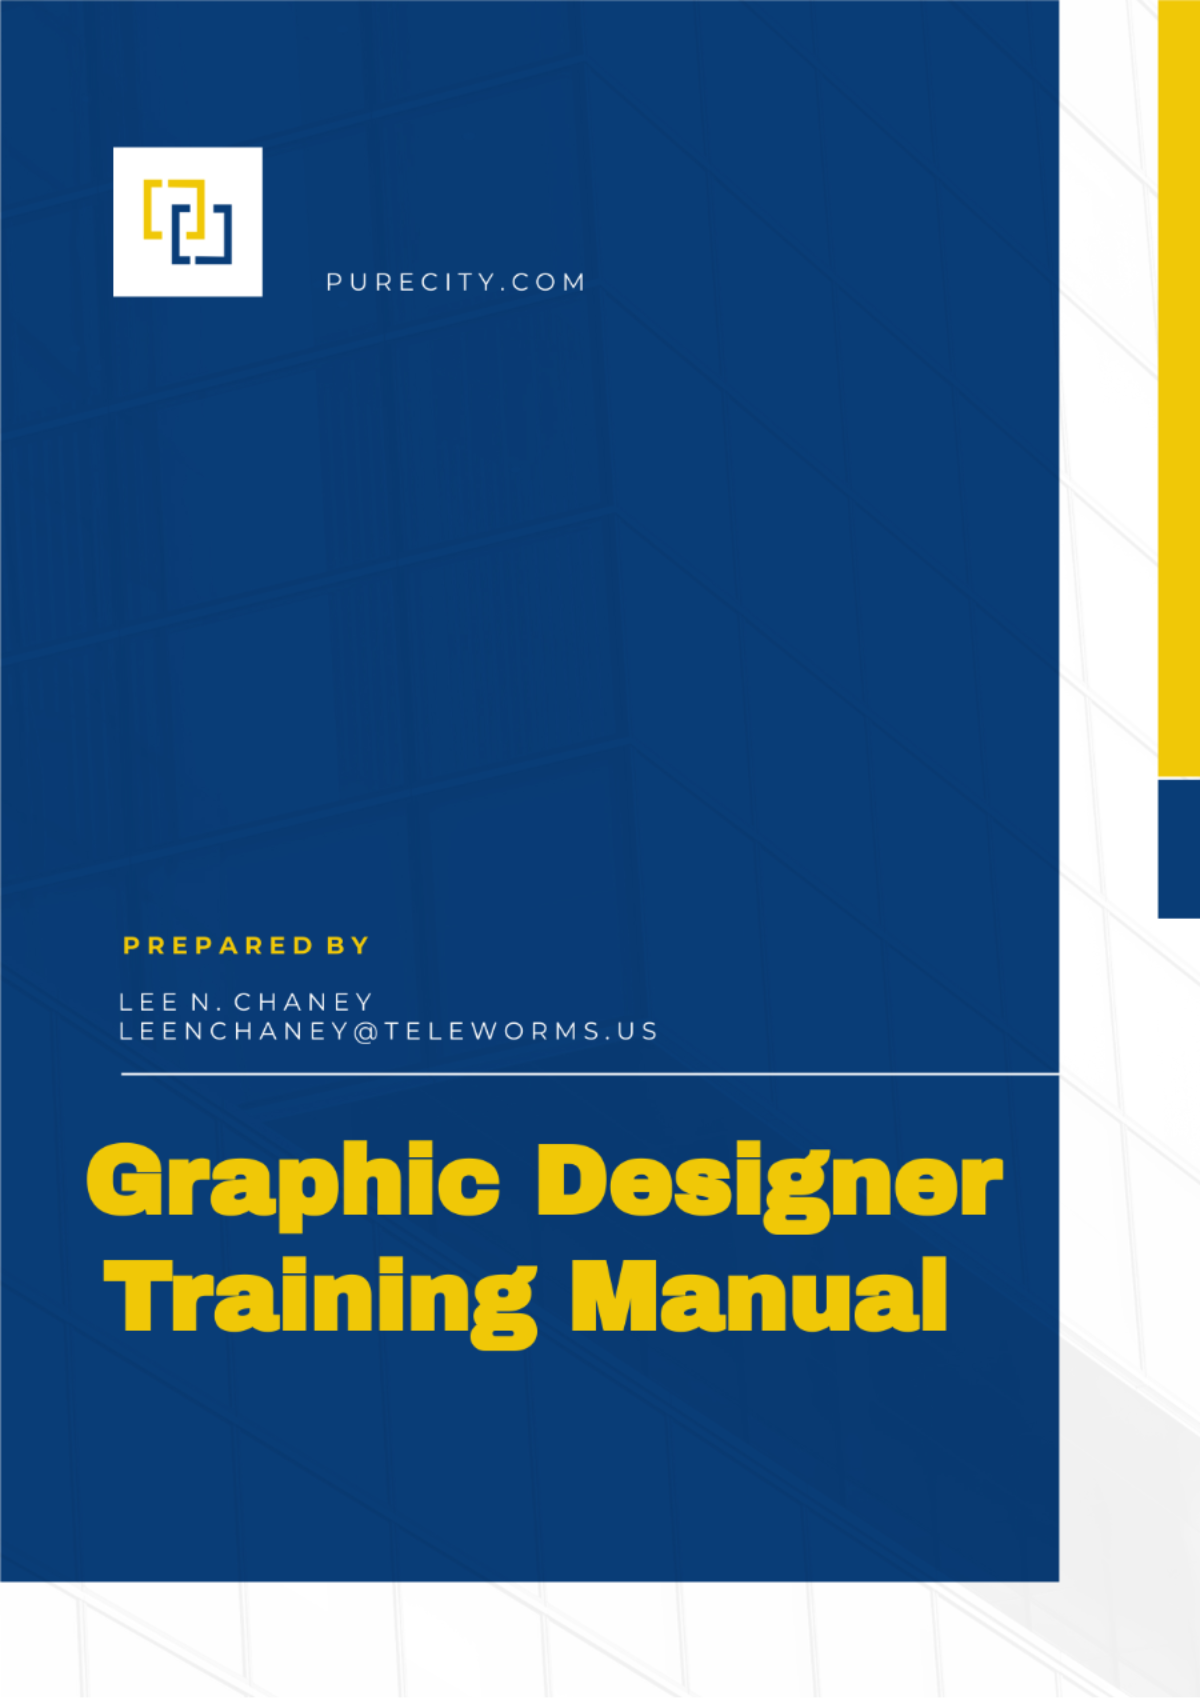 Graphic Designer Training Manual Template